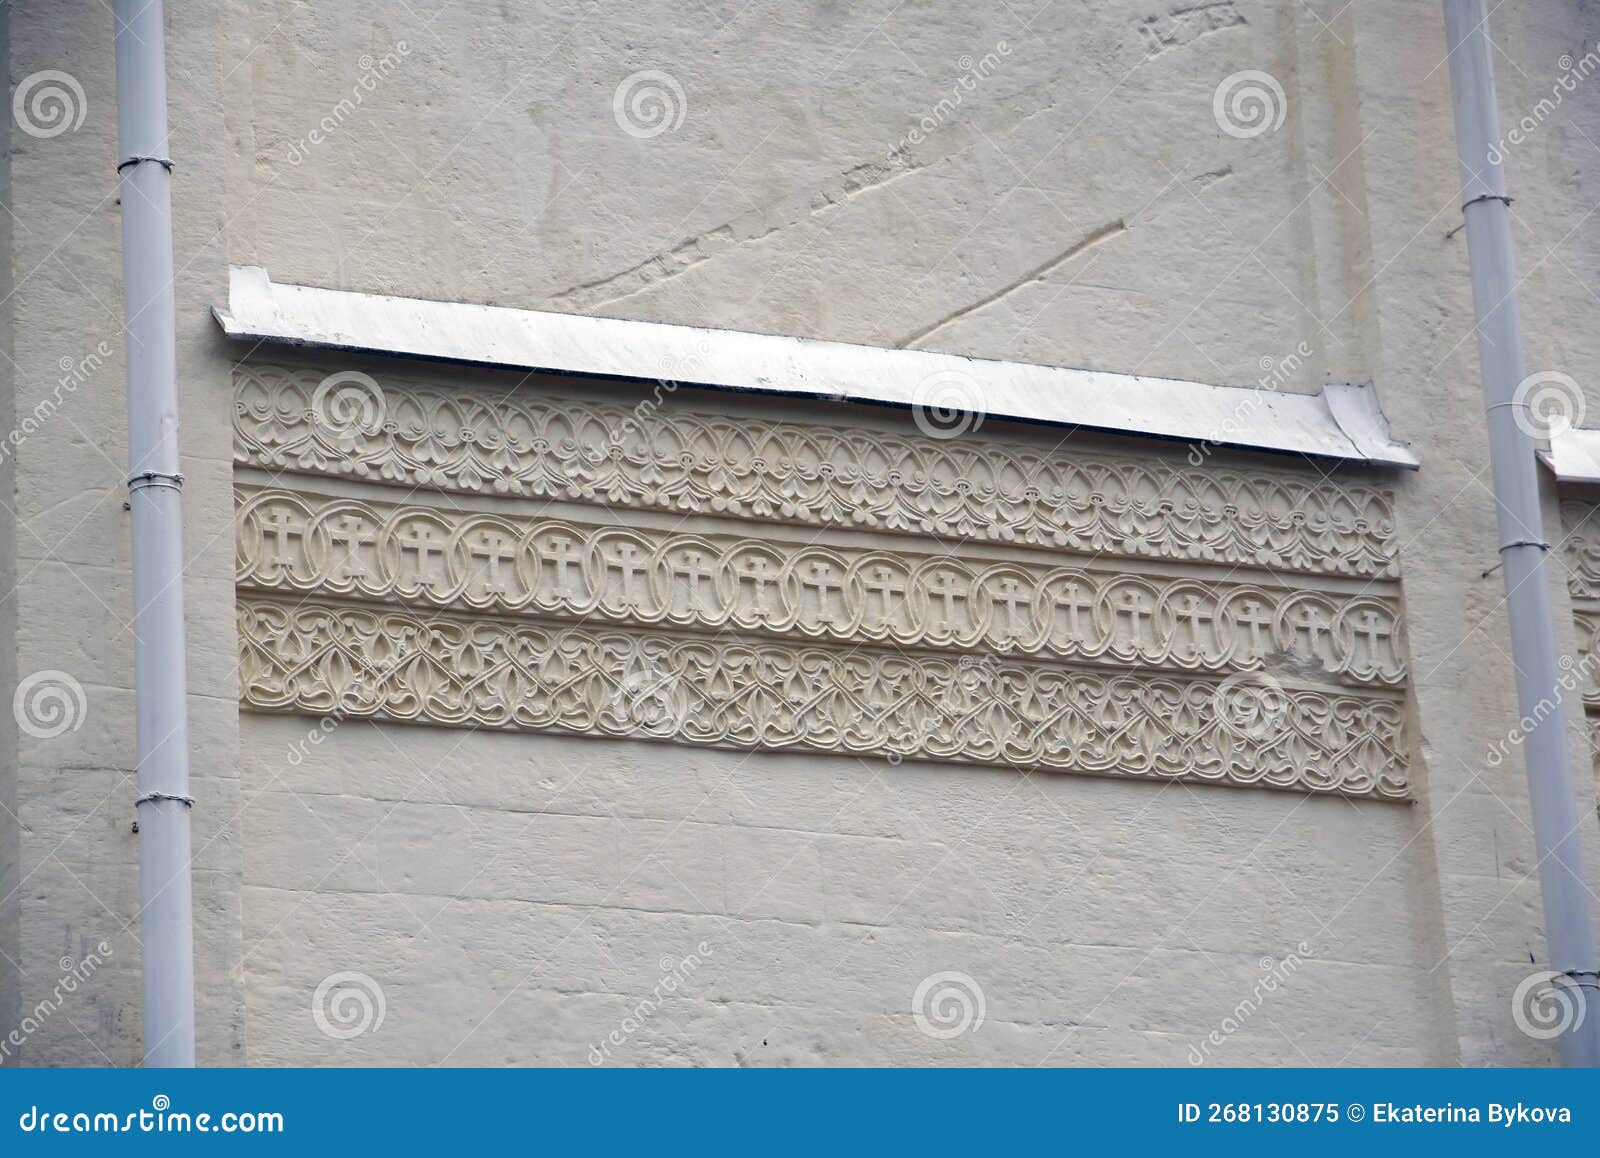 Muro De Pedra Branca Decorado Por Ornamento Religioso. Antigo Detalhe Da  Fachada Da Igreja. Imagem de Stock - Imagem de emplastro, templo: 268130875